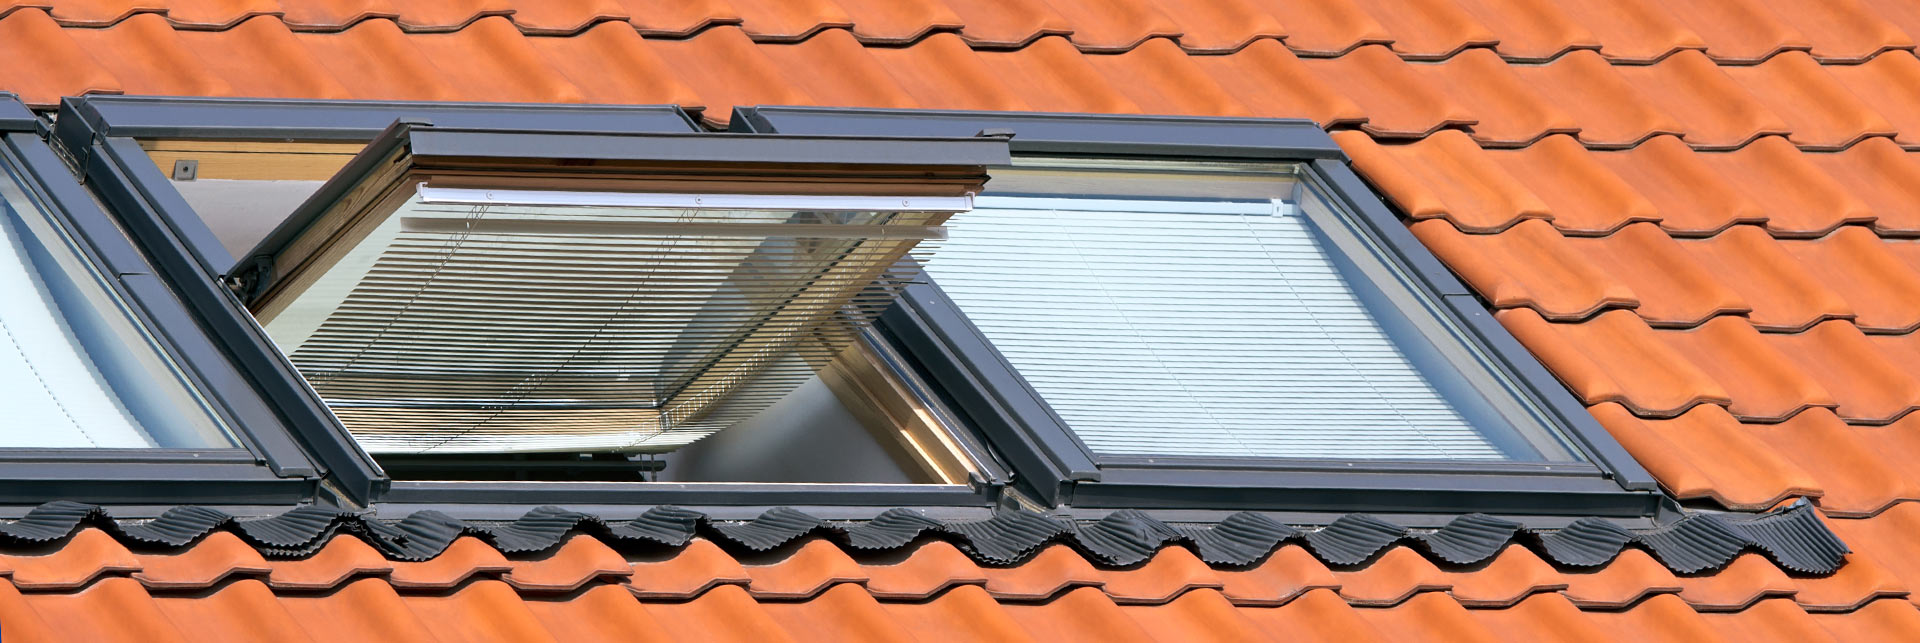 Haidl Meisterbetrieb Spenglerei Dachflächenfenster